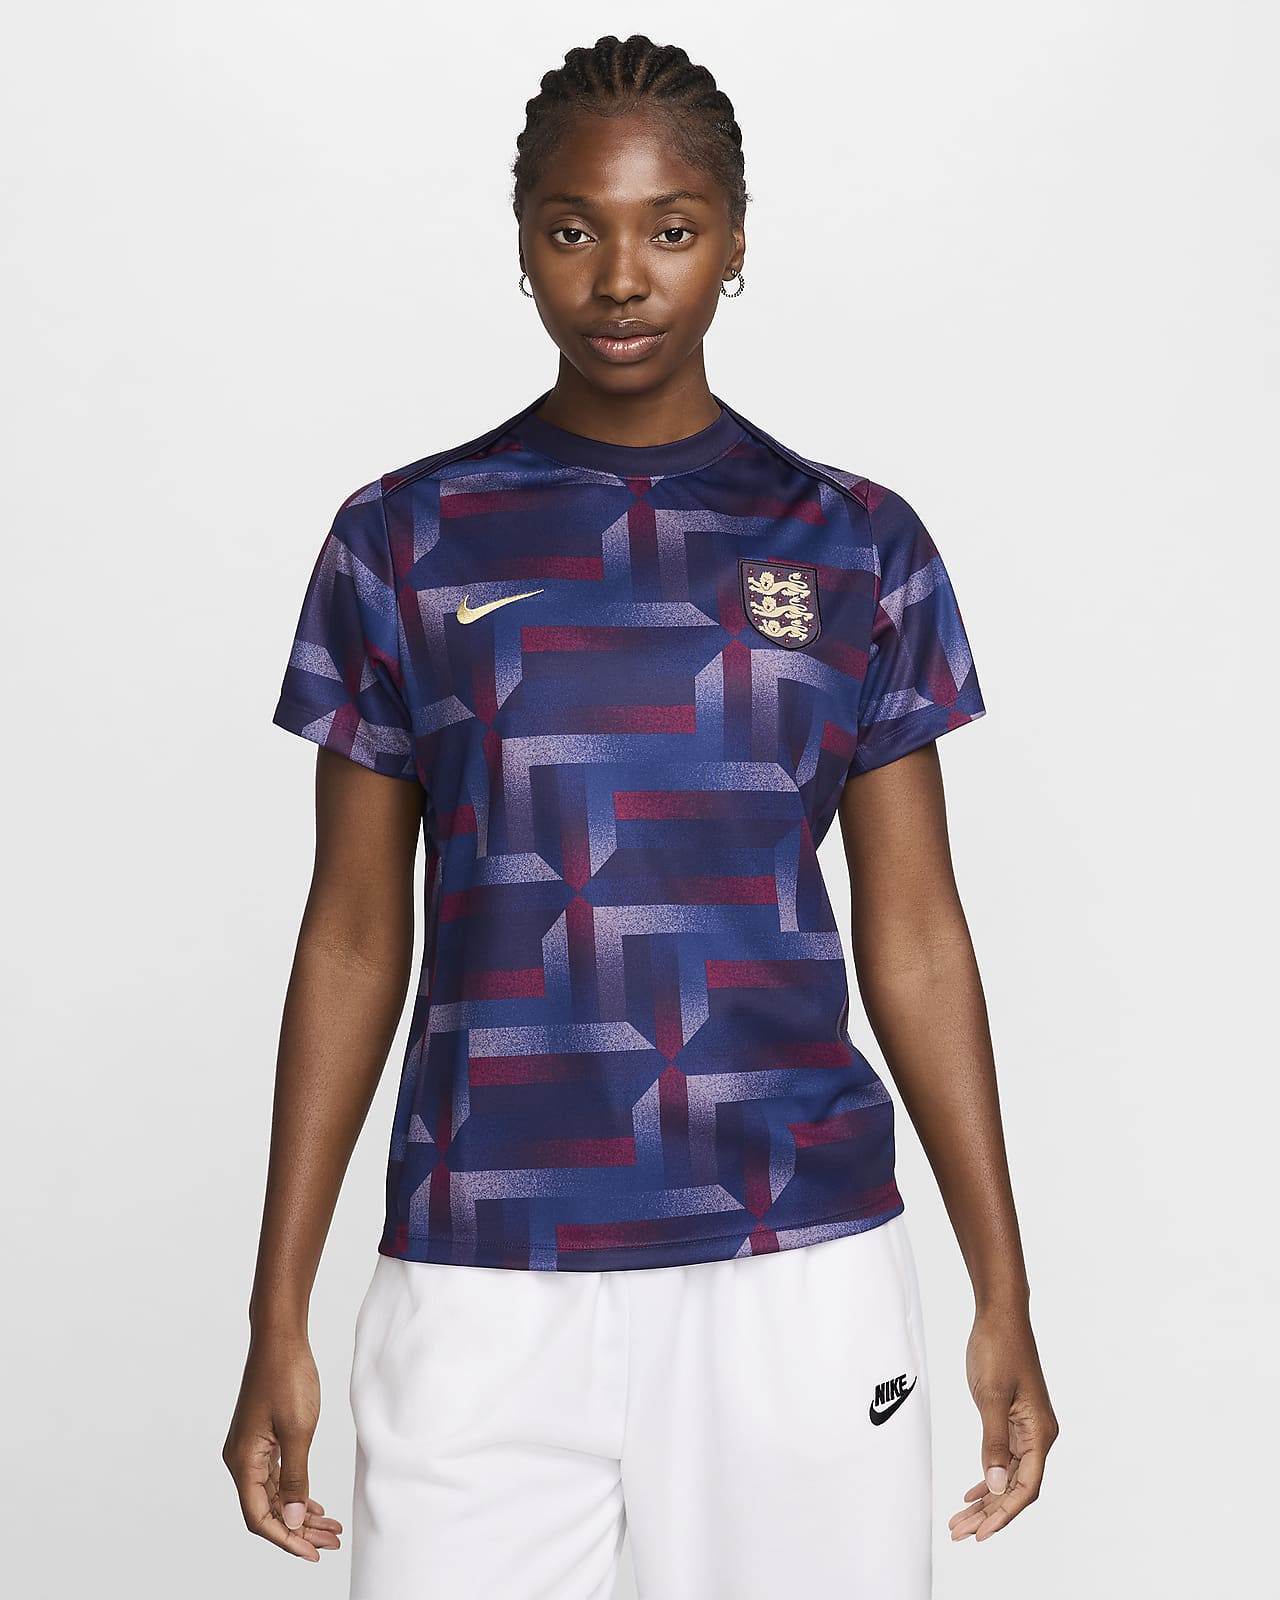 Damska przedmeczowa koszulka piłkarska z krótkim rękawem Nike Dri-FIT Anglia Academy Pro